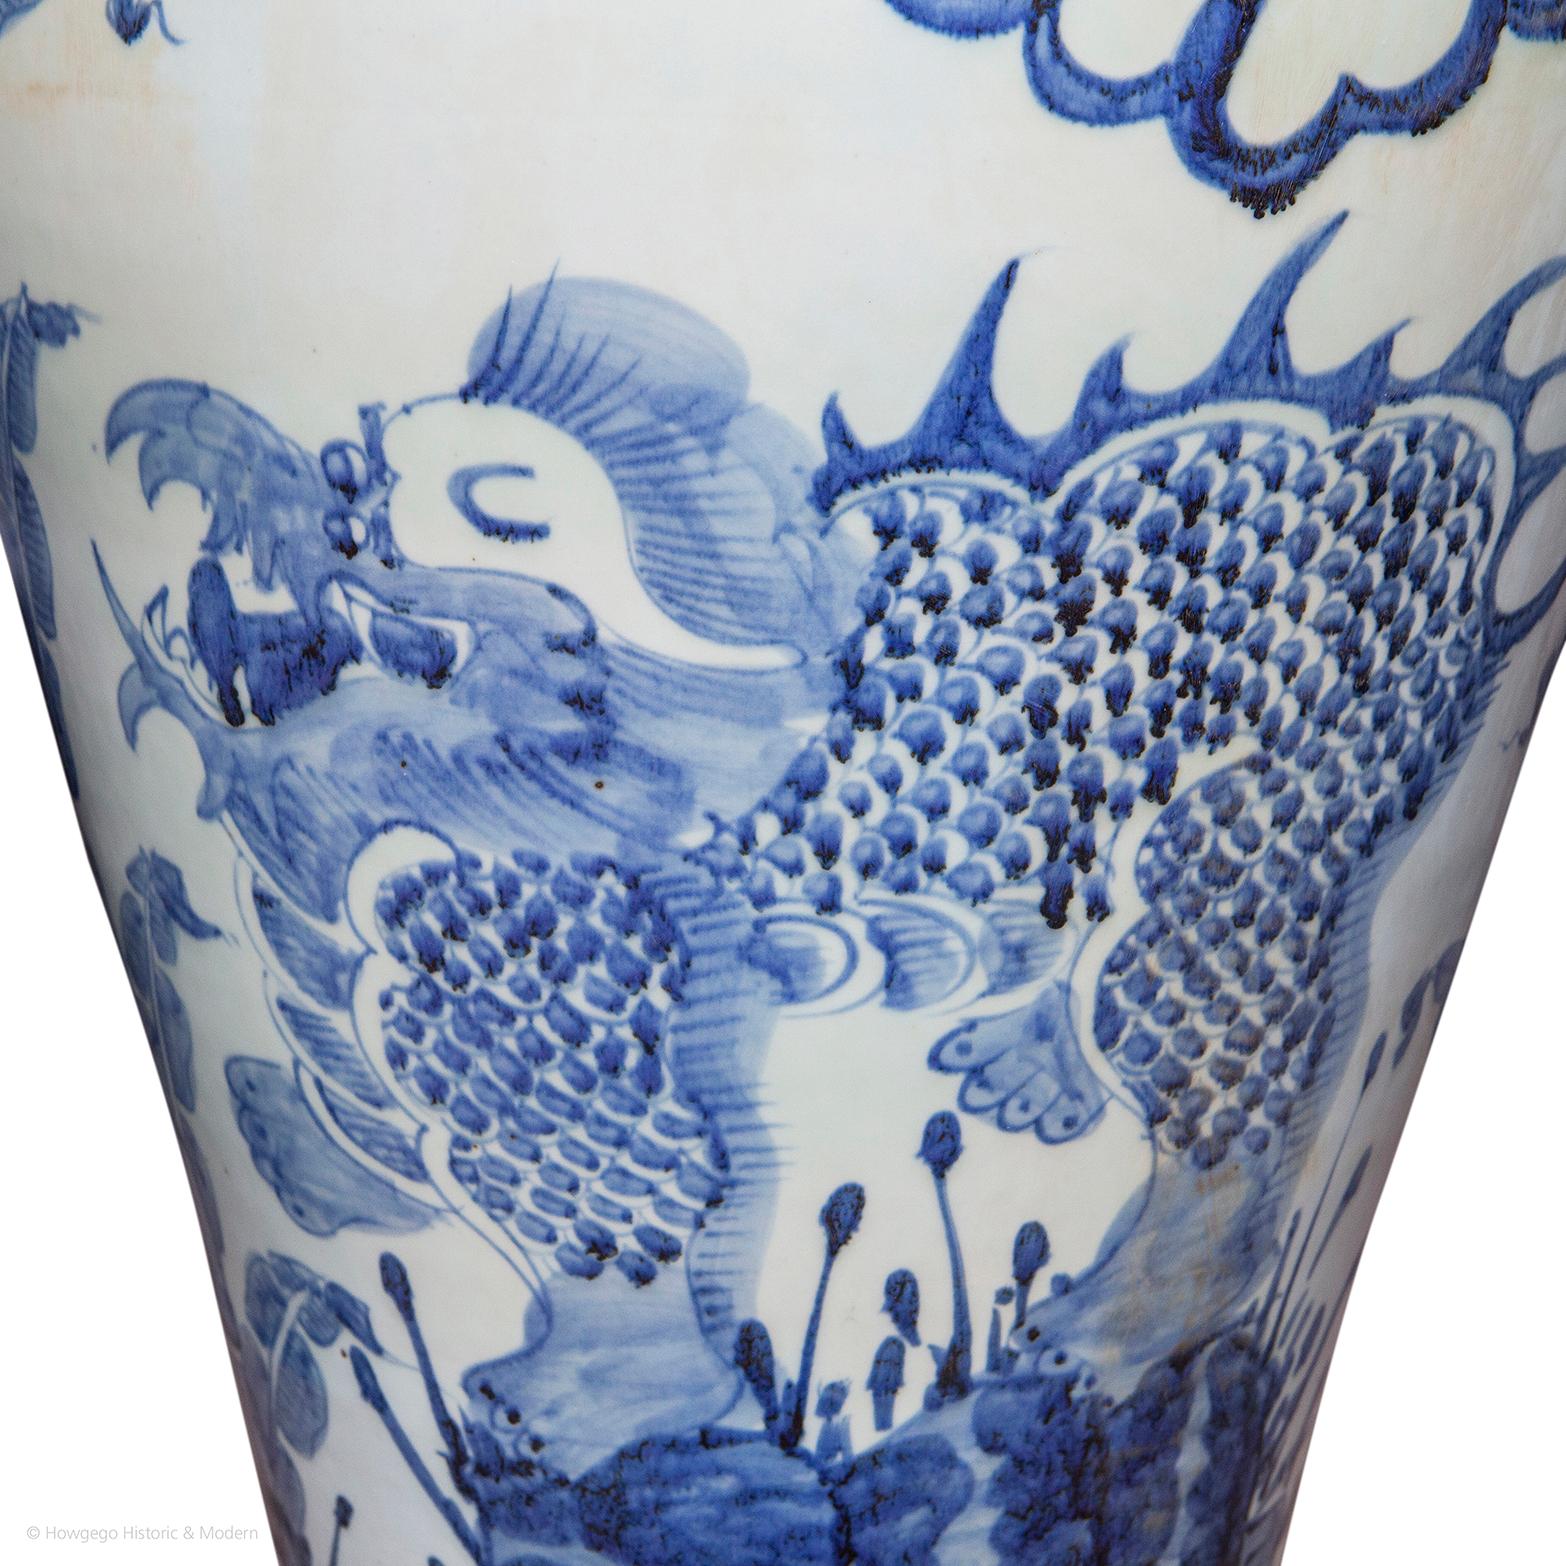 Paire de vases et de couvercles en porcelaine chinoise bleue et blanche de style baroque, d'une hauteur de 3 pieds 9 pouces, faisant peut-être partie à l'origine d'une grande garniture.

- Cette paire rare de vases remarquables est une pièce